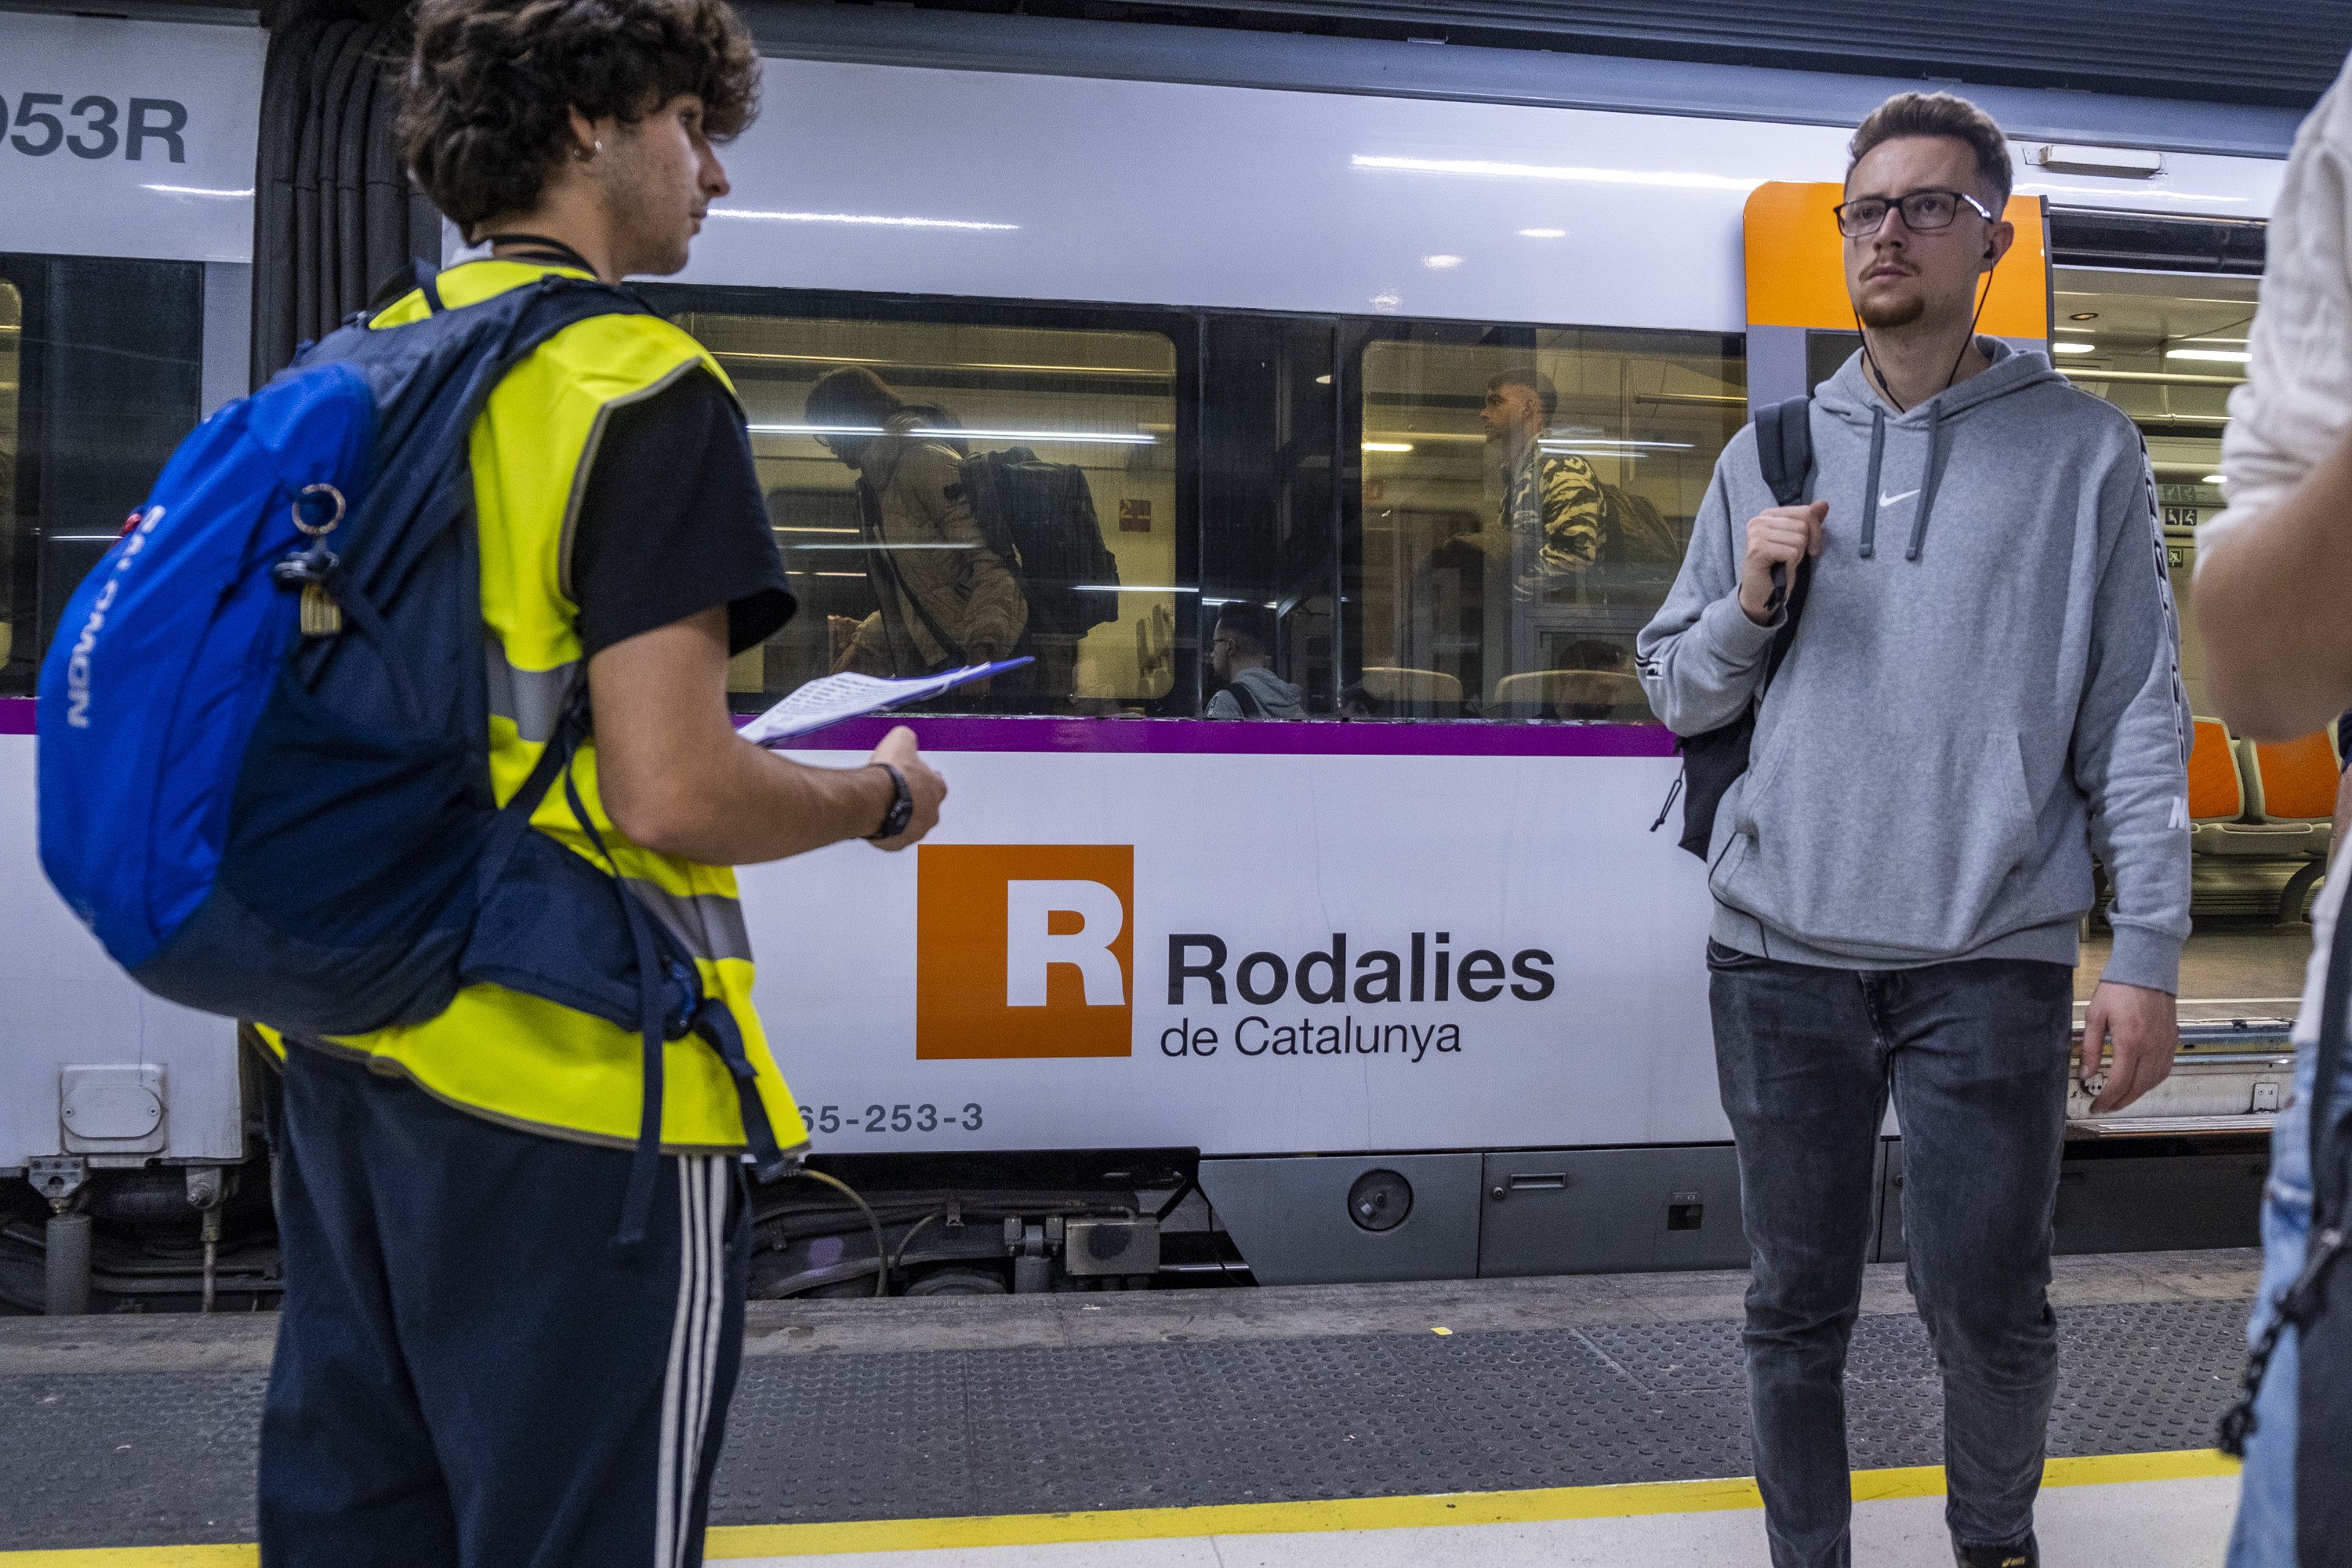 Entrar a Barcelona en transport públic suposa trigar un 20% més que en vehicle privat